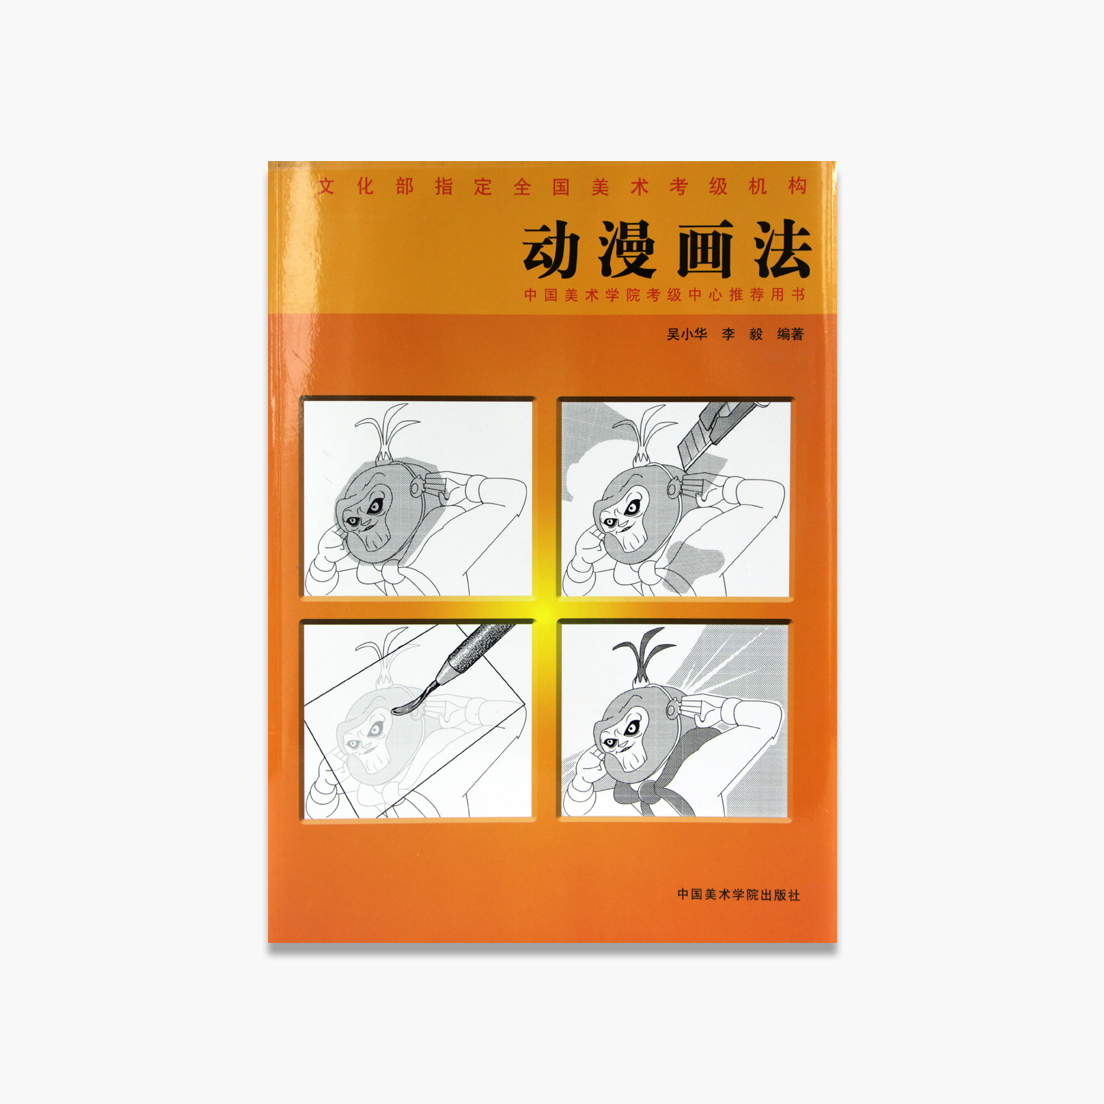 《动漫画法》定价:18 吴小华 李毅 著 中国美术学院 正版品牌直销 满58包邮